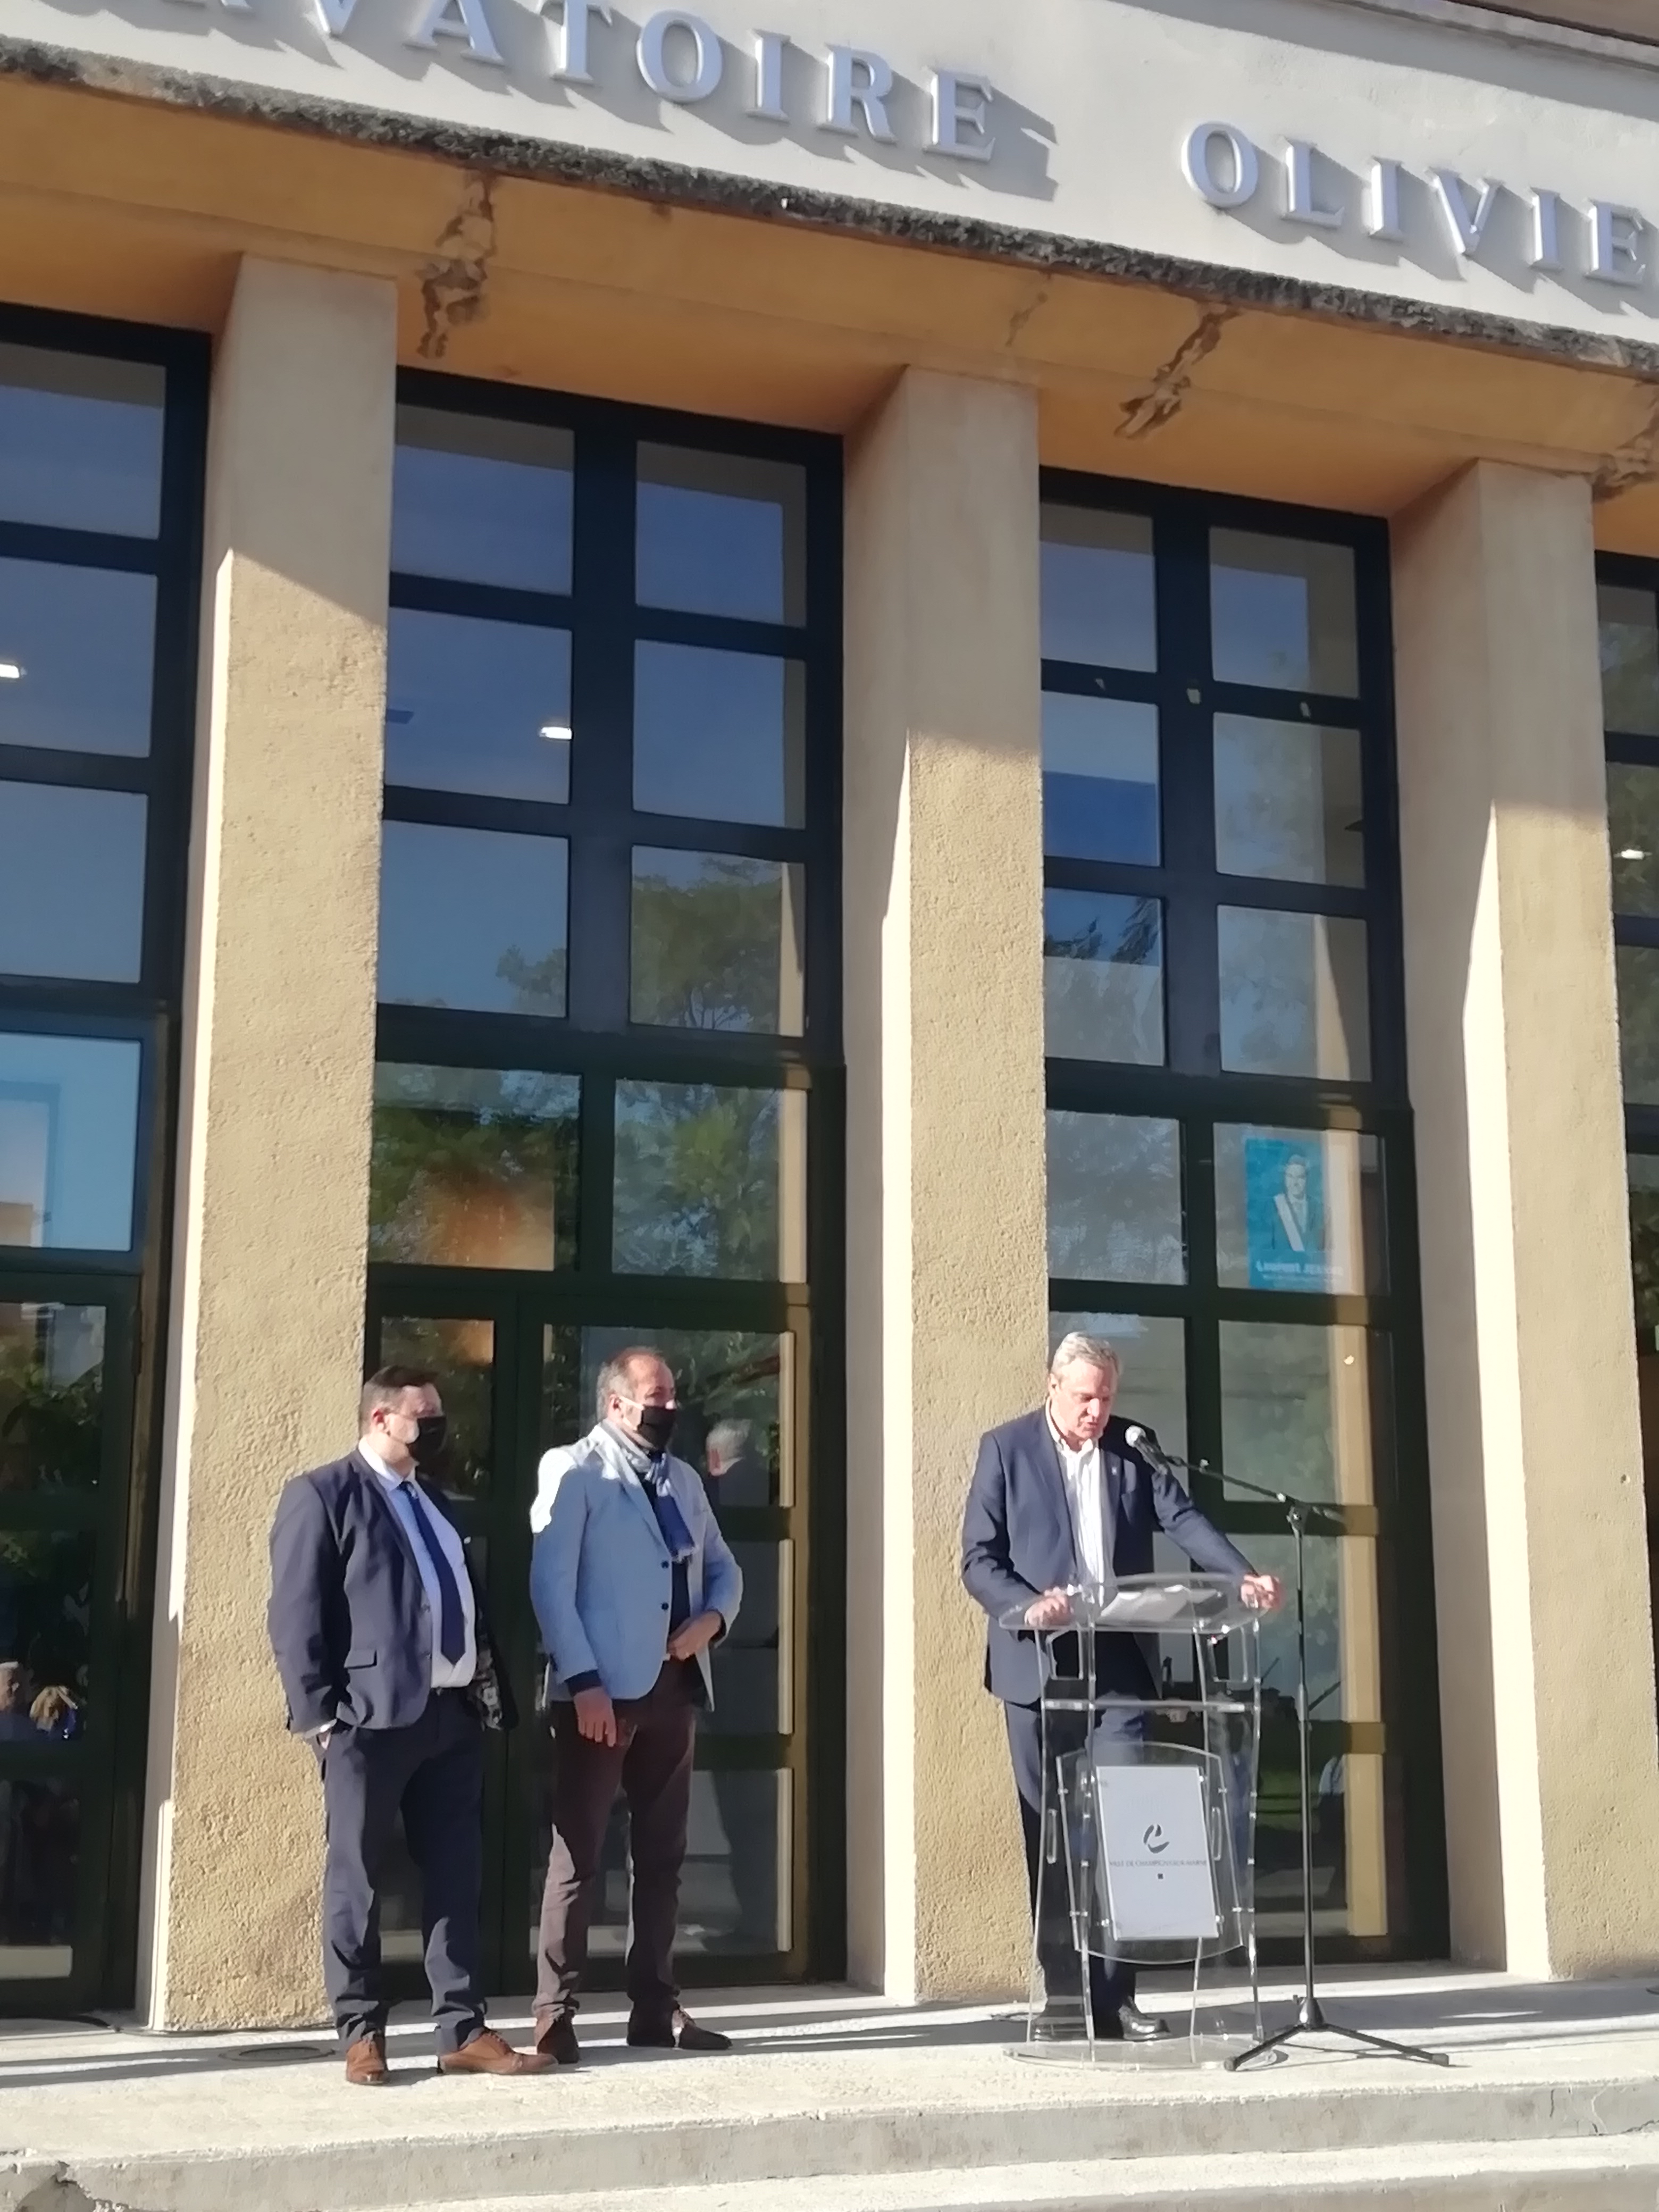 Discours inauguration de la plaque cité-jardin de Champigny-sur-Marne